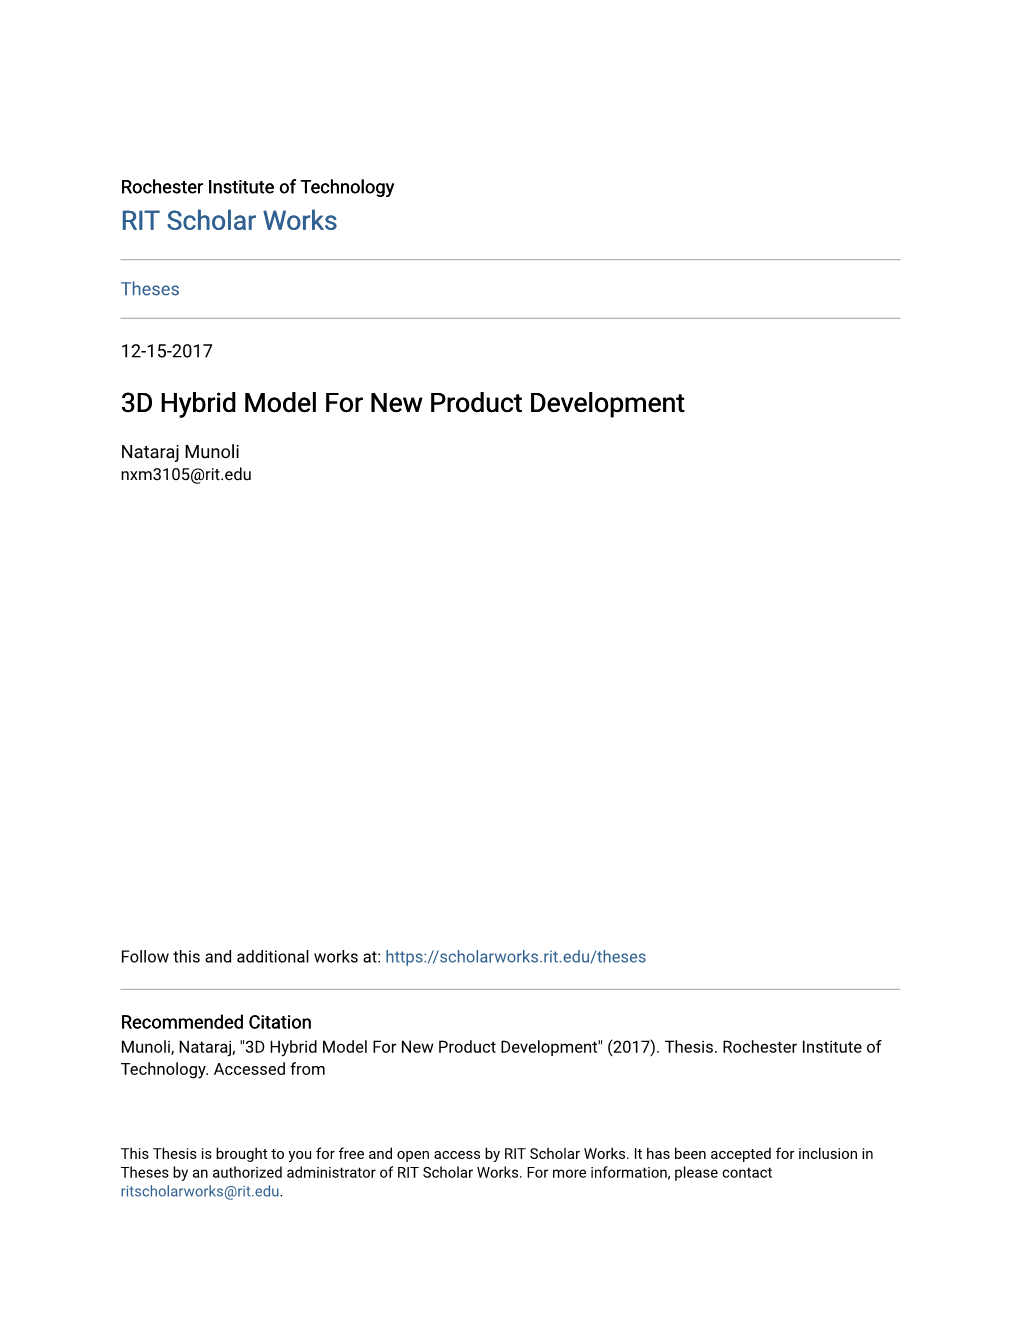 3D Hybrid Model for New Product Development